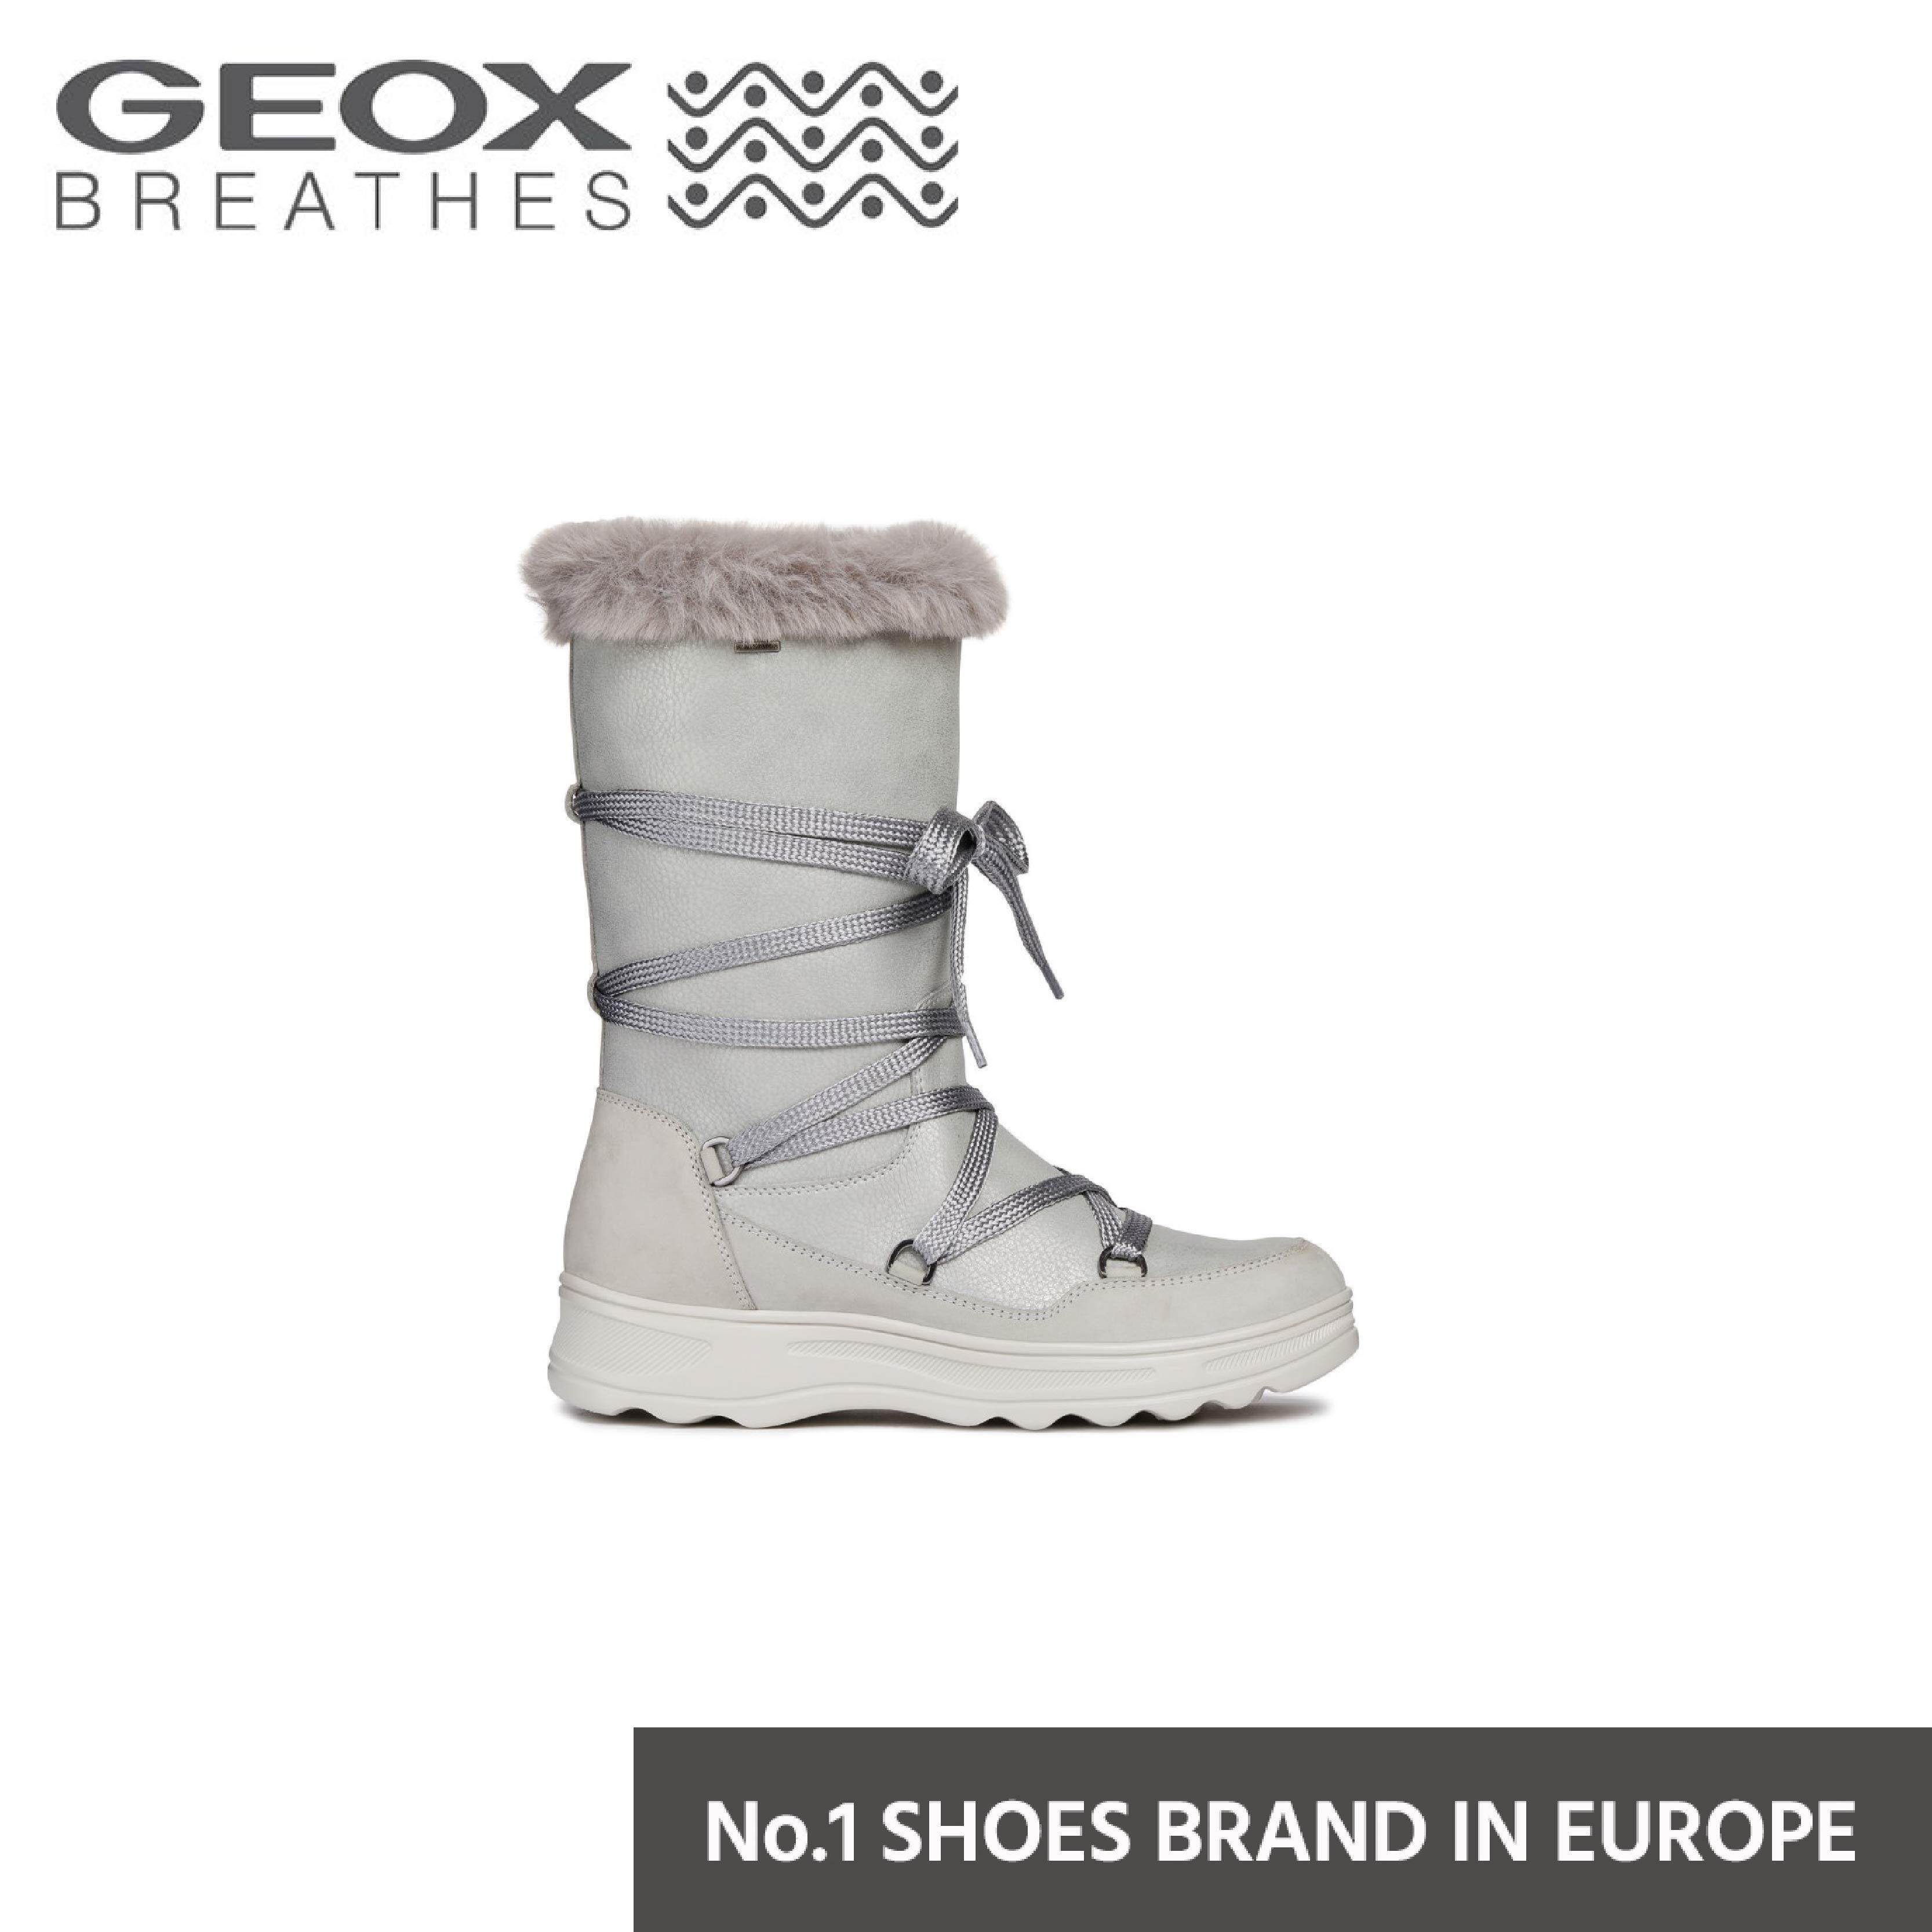 GEOX รองเท้า HOSMOS B ABX B รองเท้าผู้หญิง สีขาว